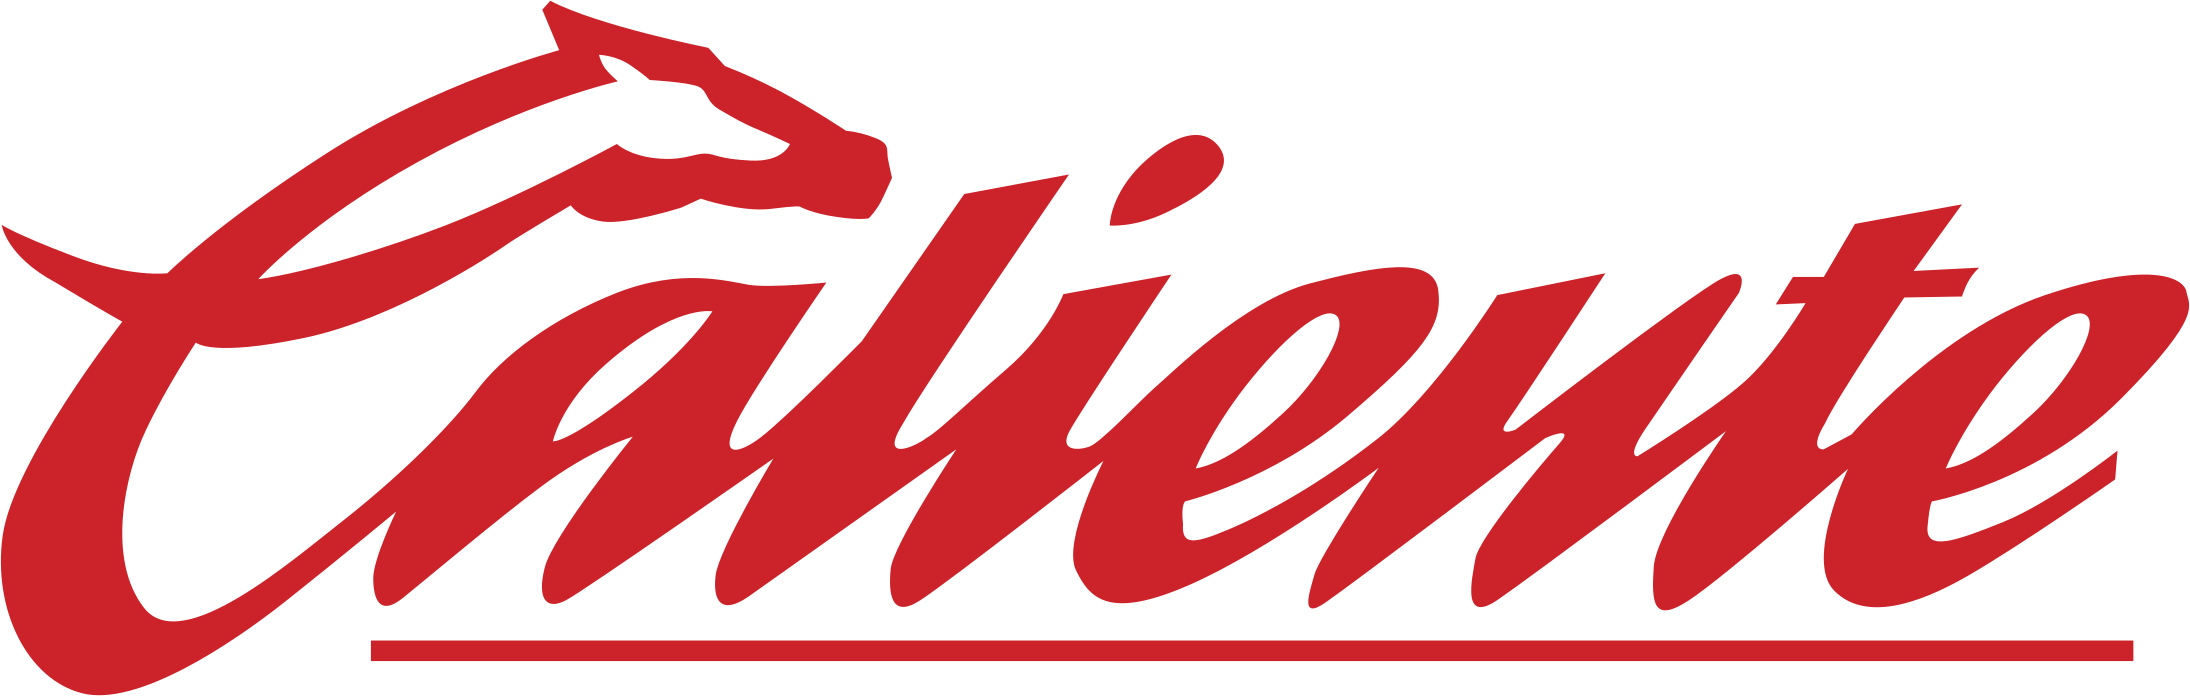 Логотип Caliente